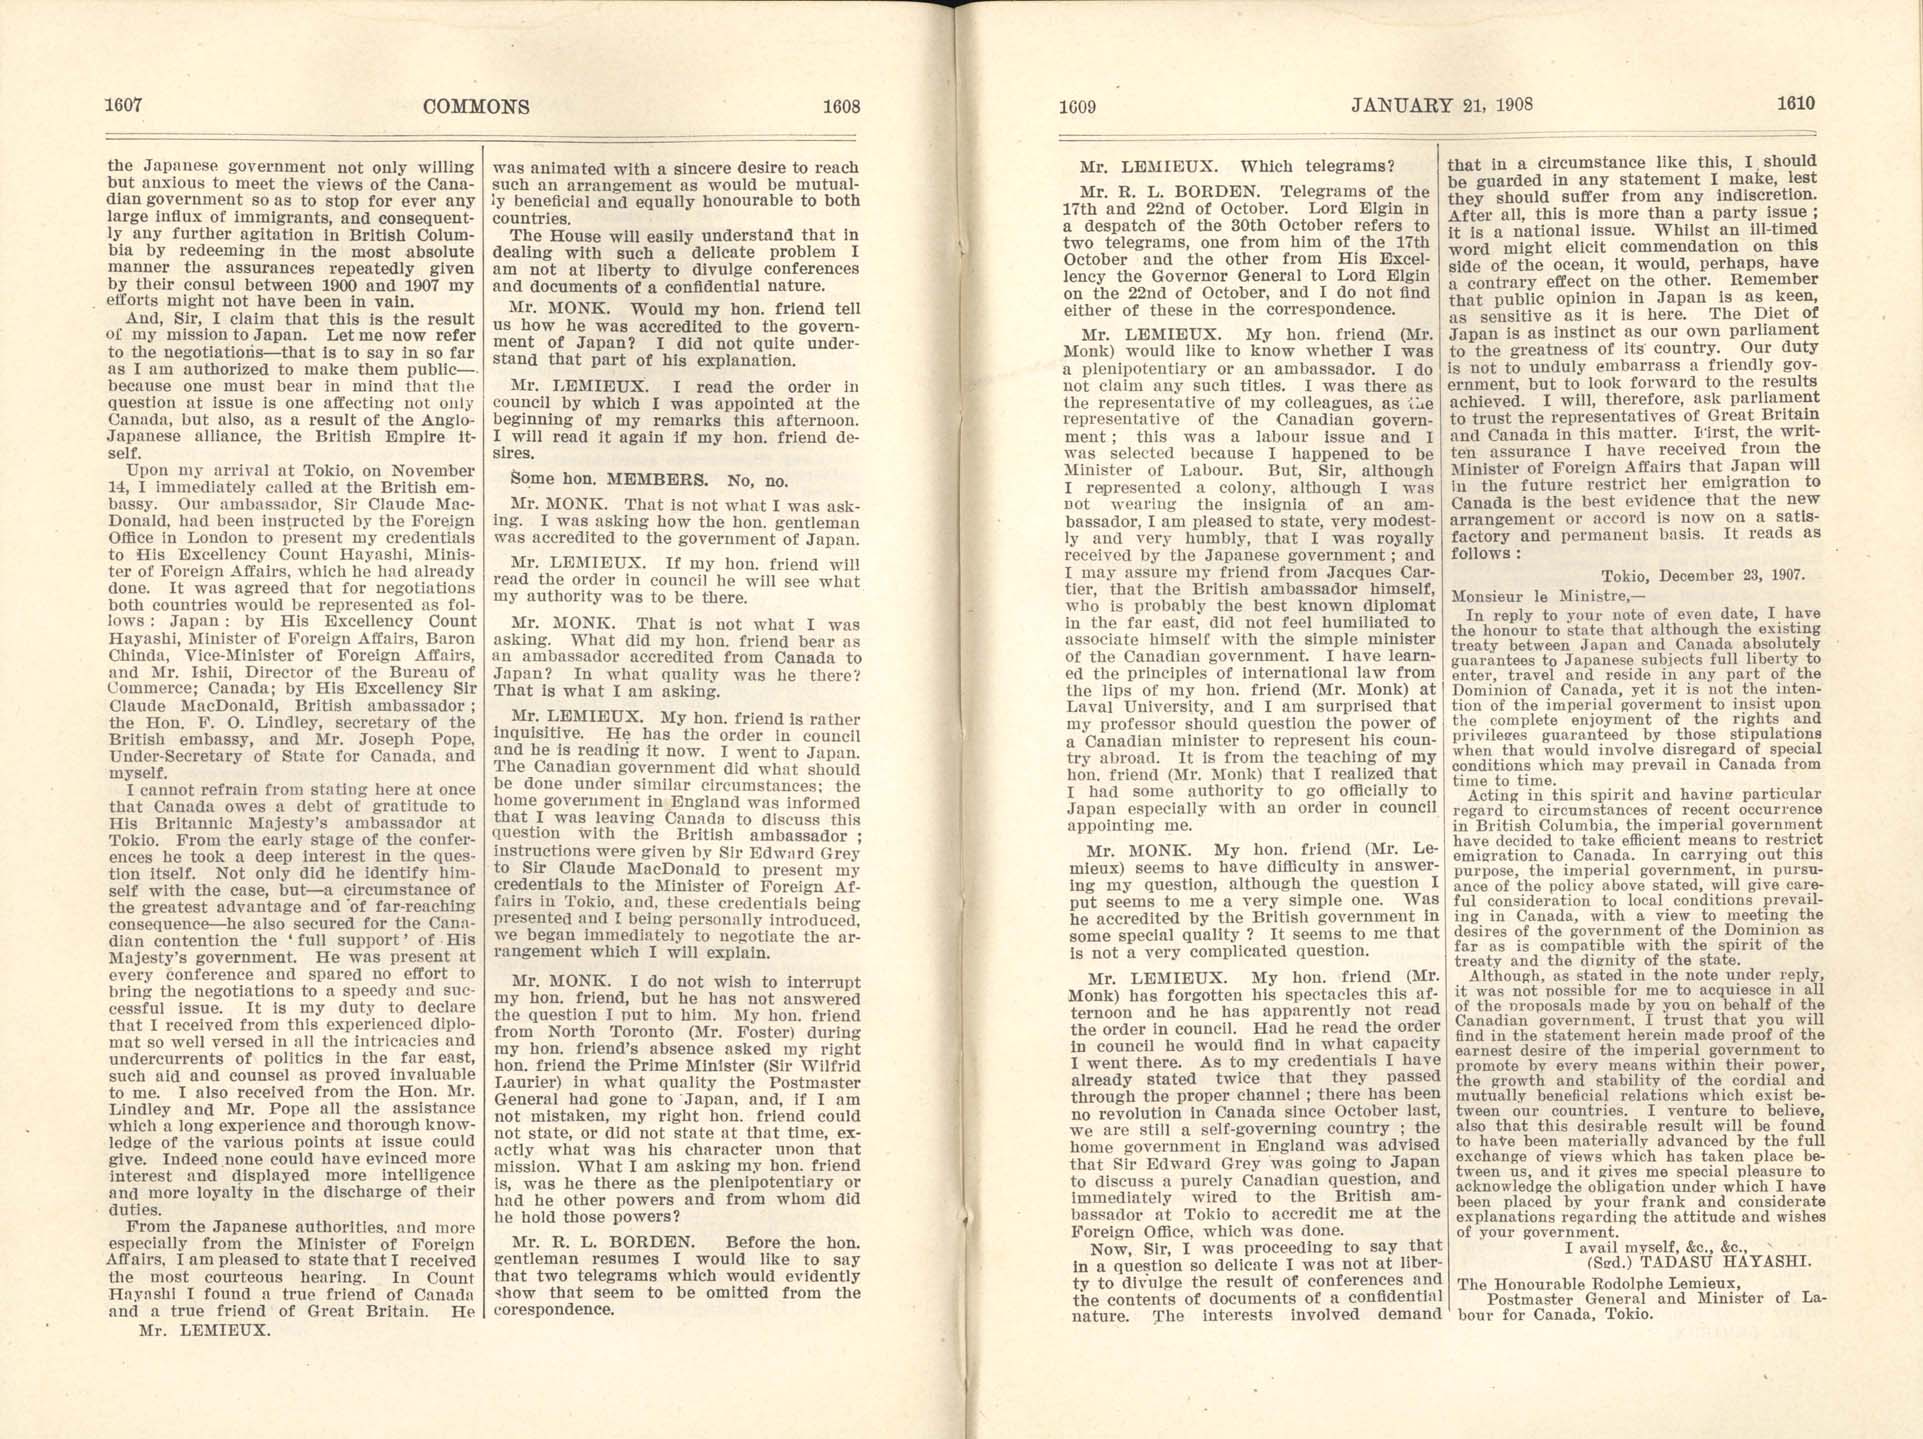 Page 1607, 1608, 1609, 1610 Gentlemen’s Agreement, 1908